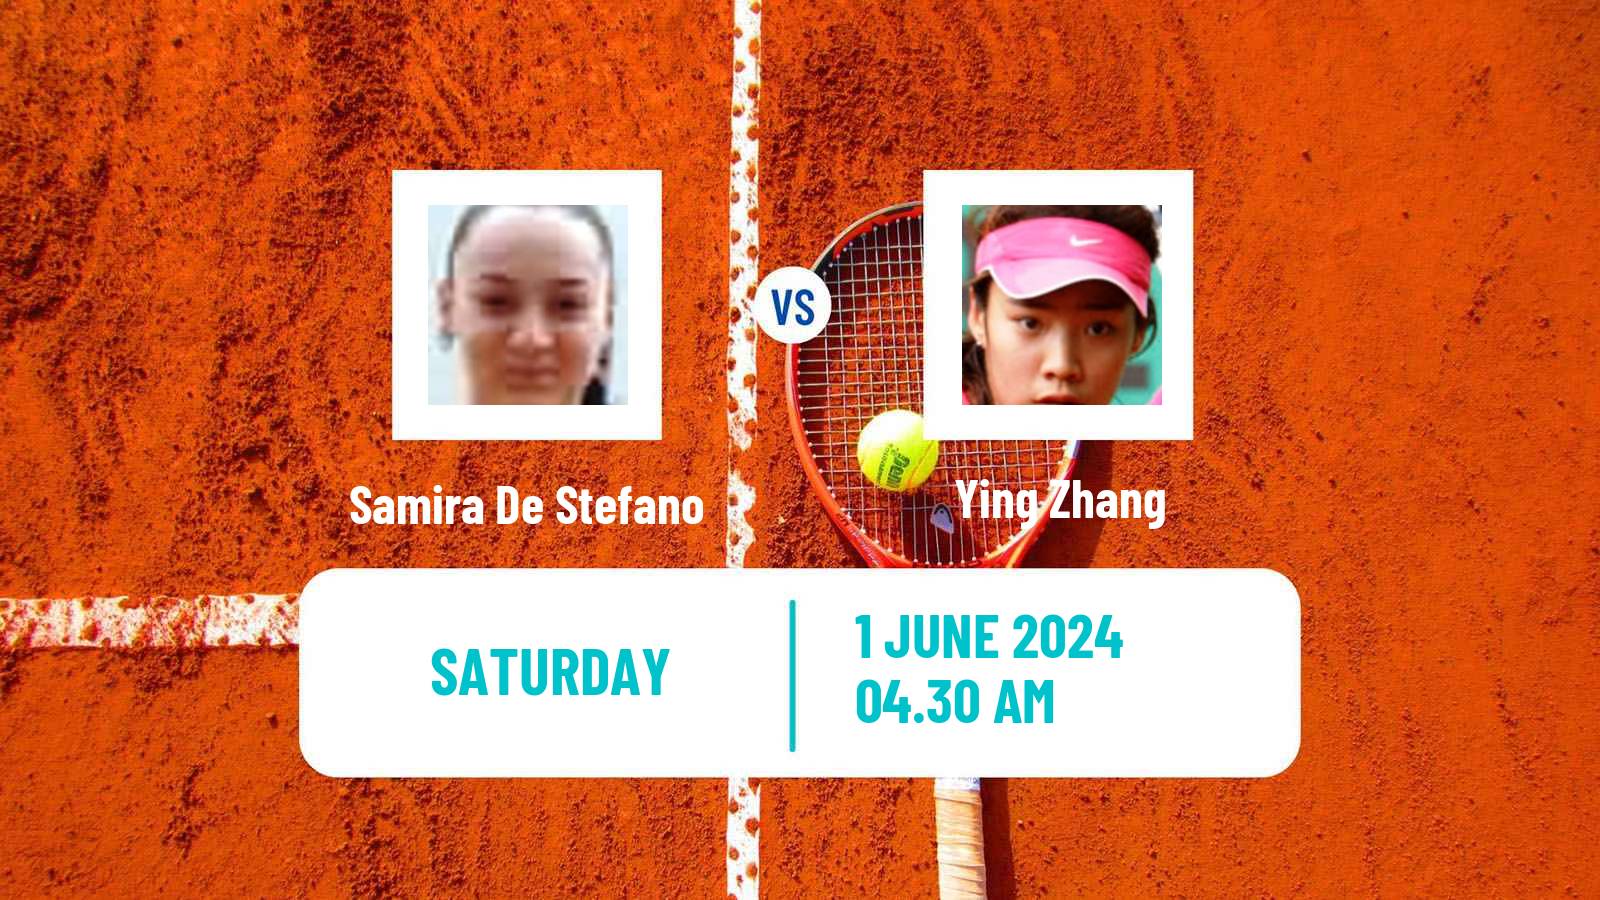 Tennis ITF W15 Monastir 20 Women Samira De Stefano - Ying Zhang